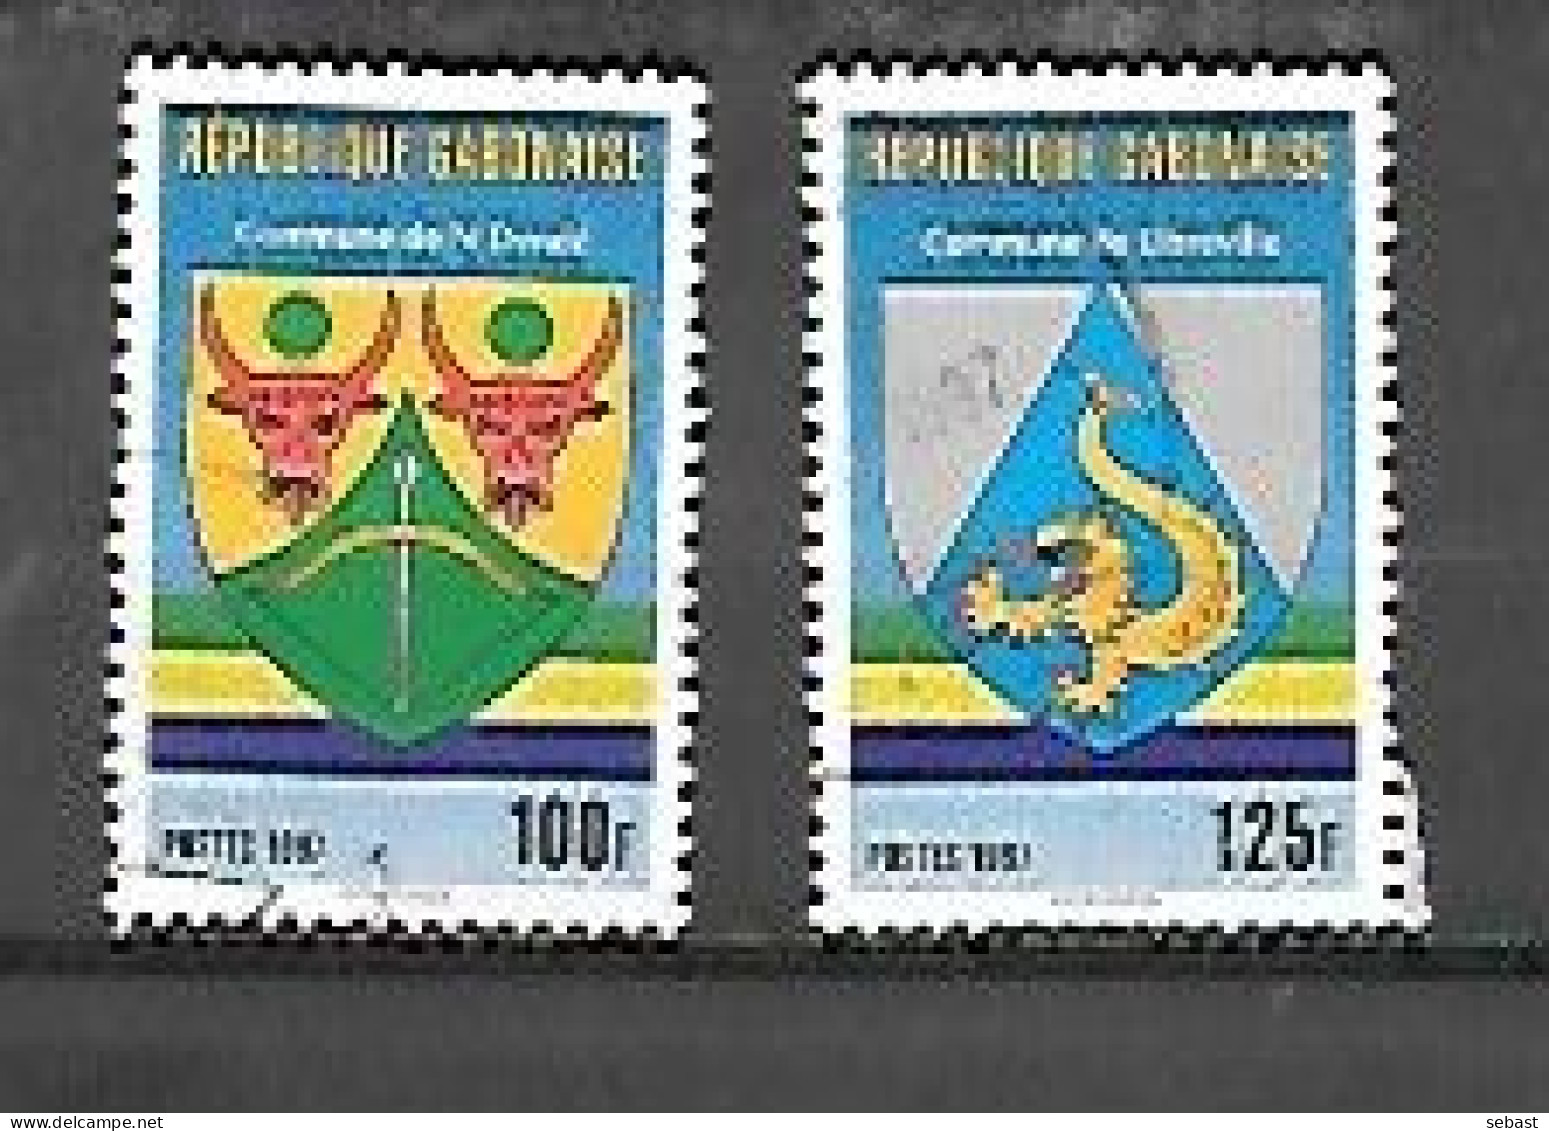 TIMBRE OBLITERE DU GABON DE  1997 N° MICHEL 1340/41 - Gabon